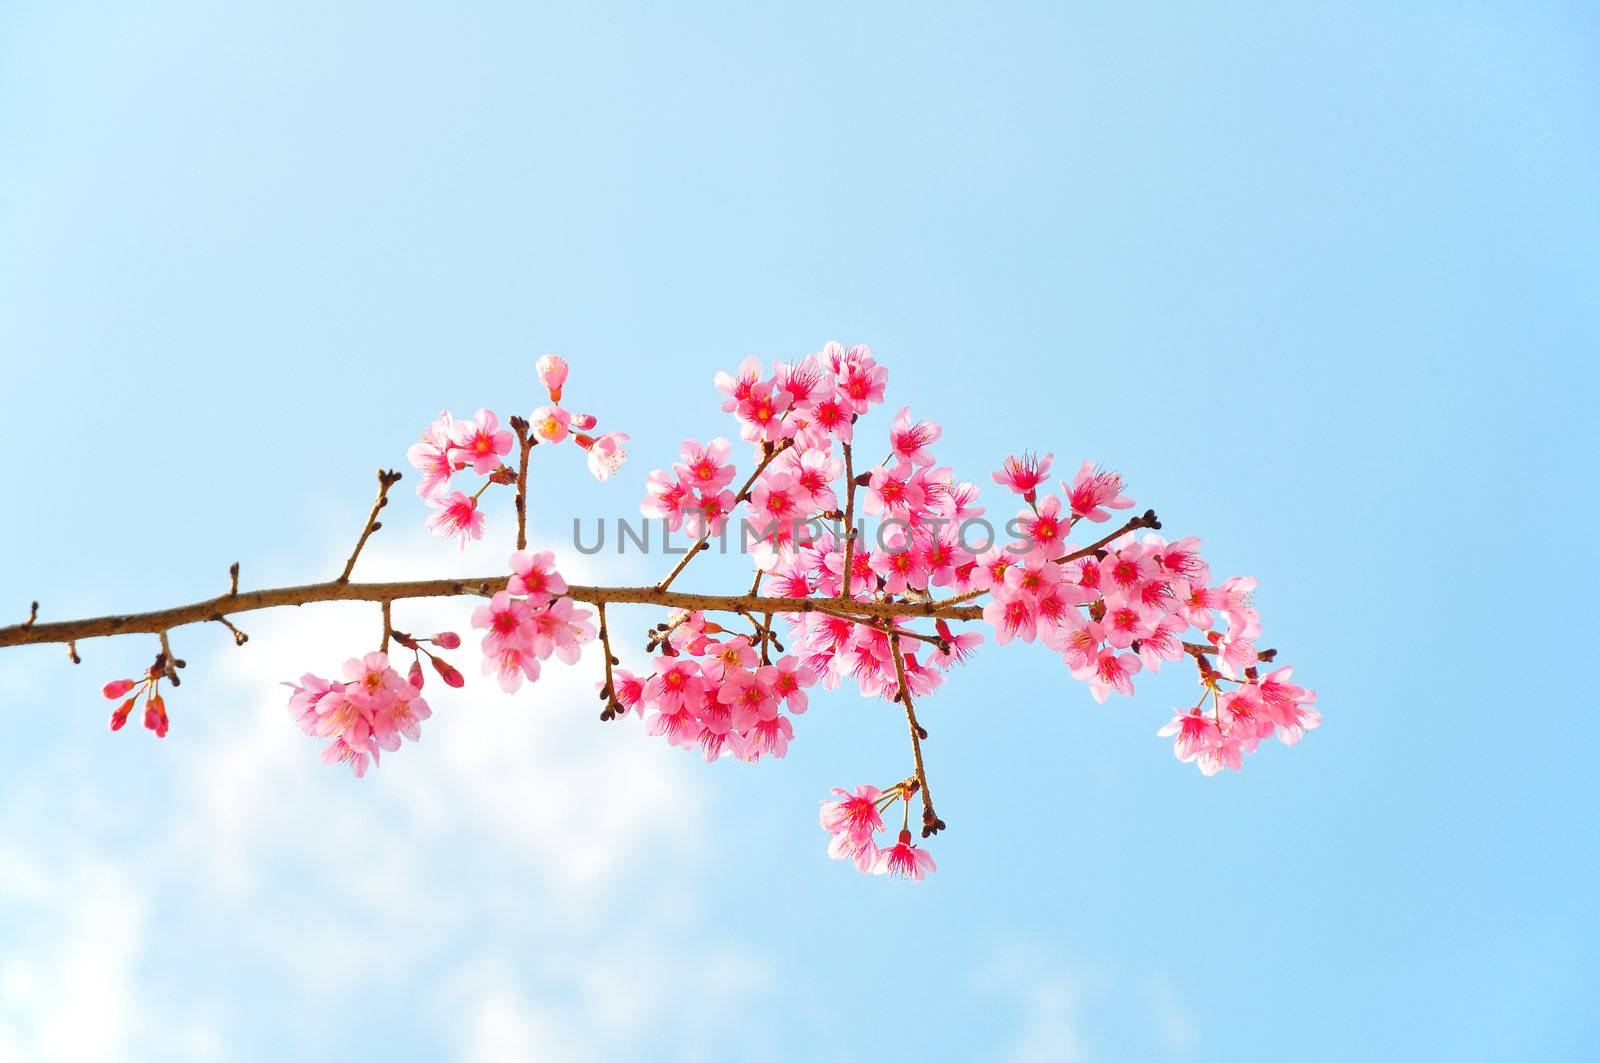 Sweaty Pink flower call Wild Himalayan Cherry by TanawatPontchour